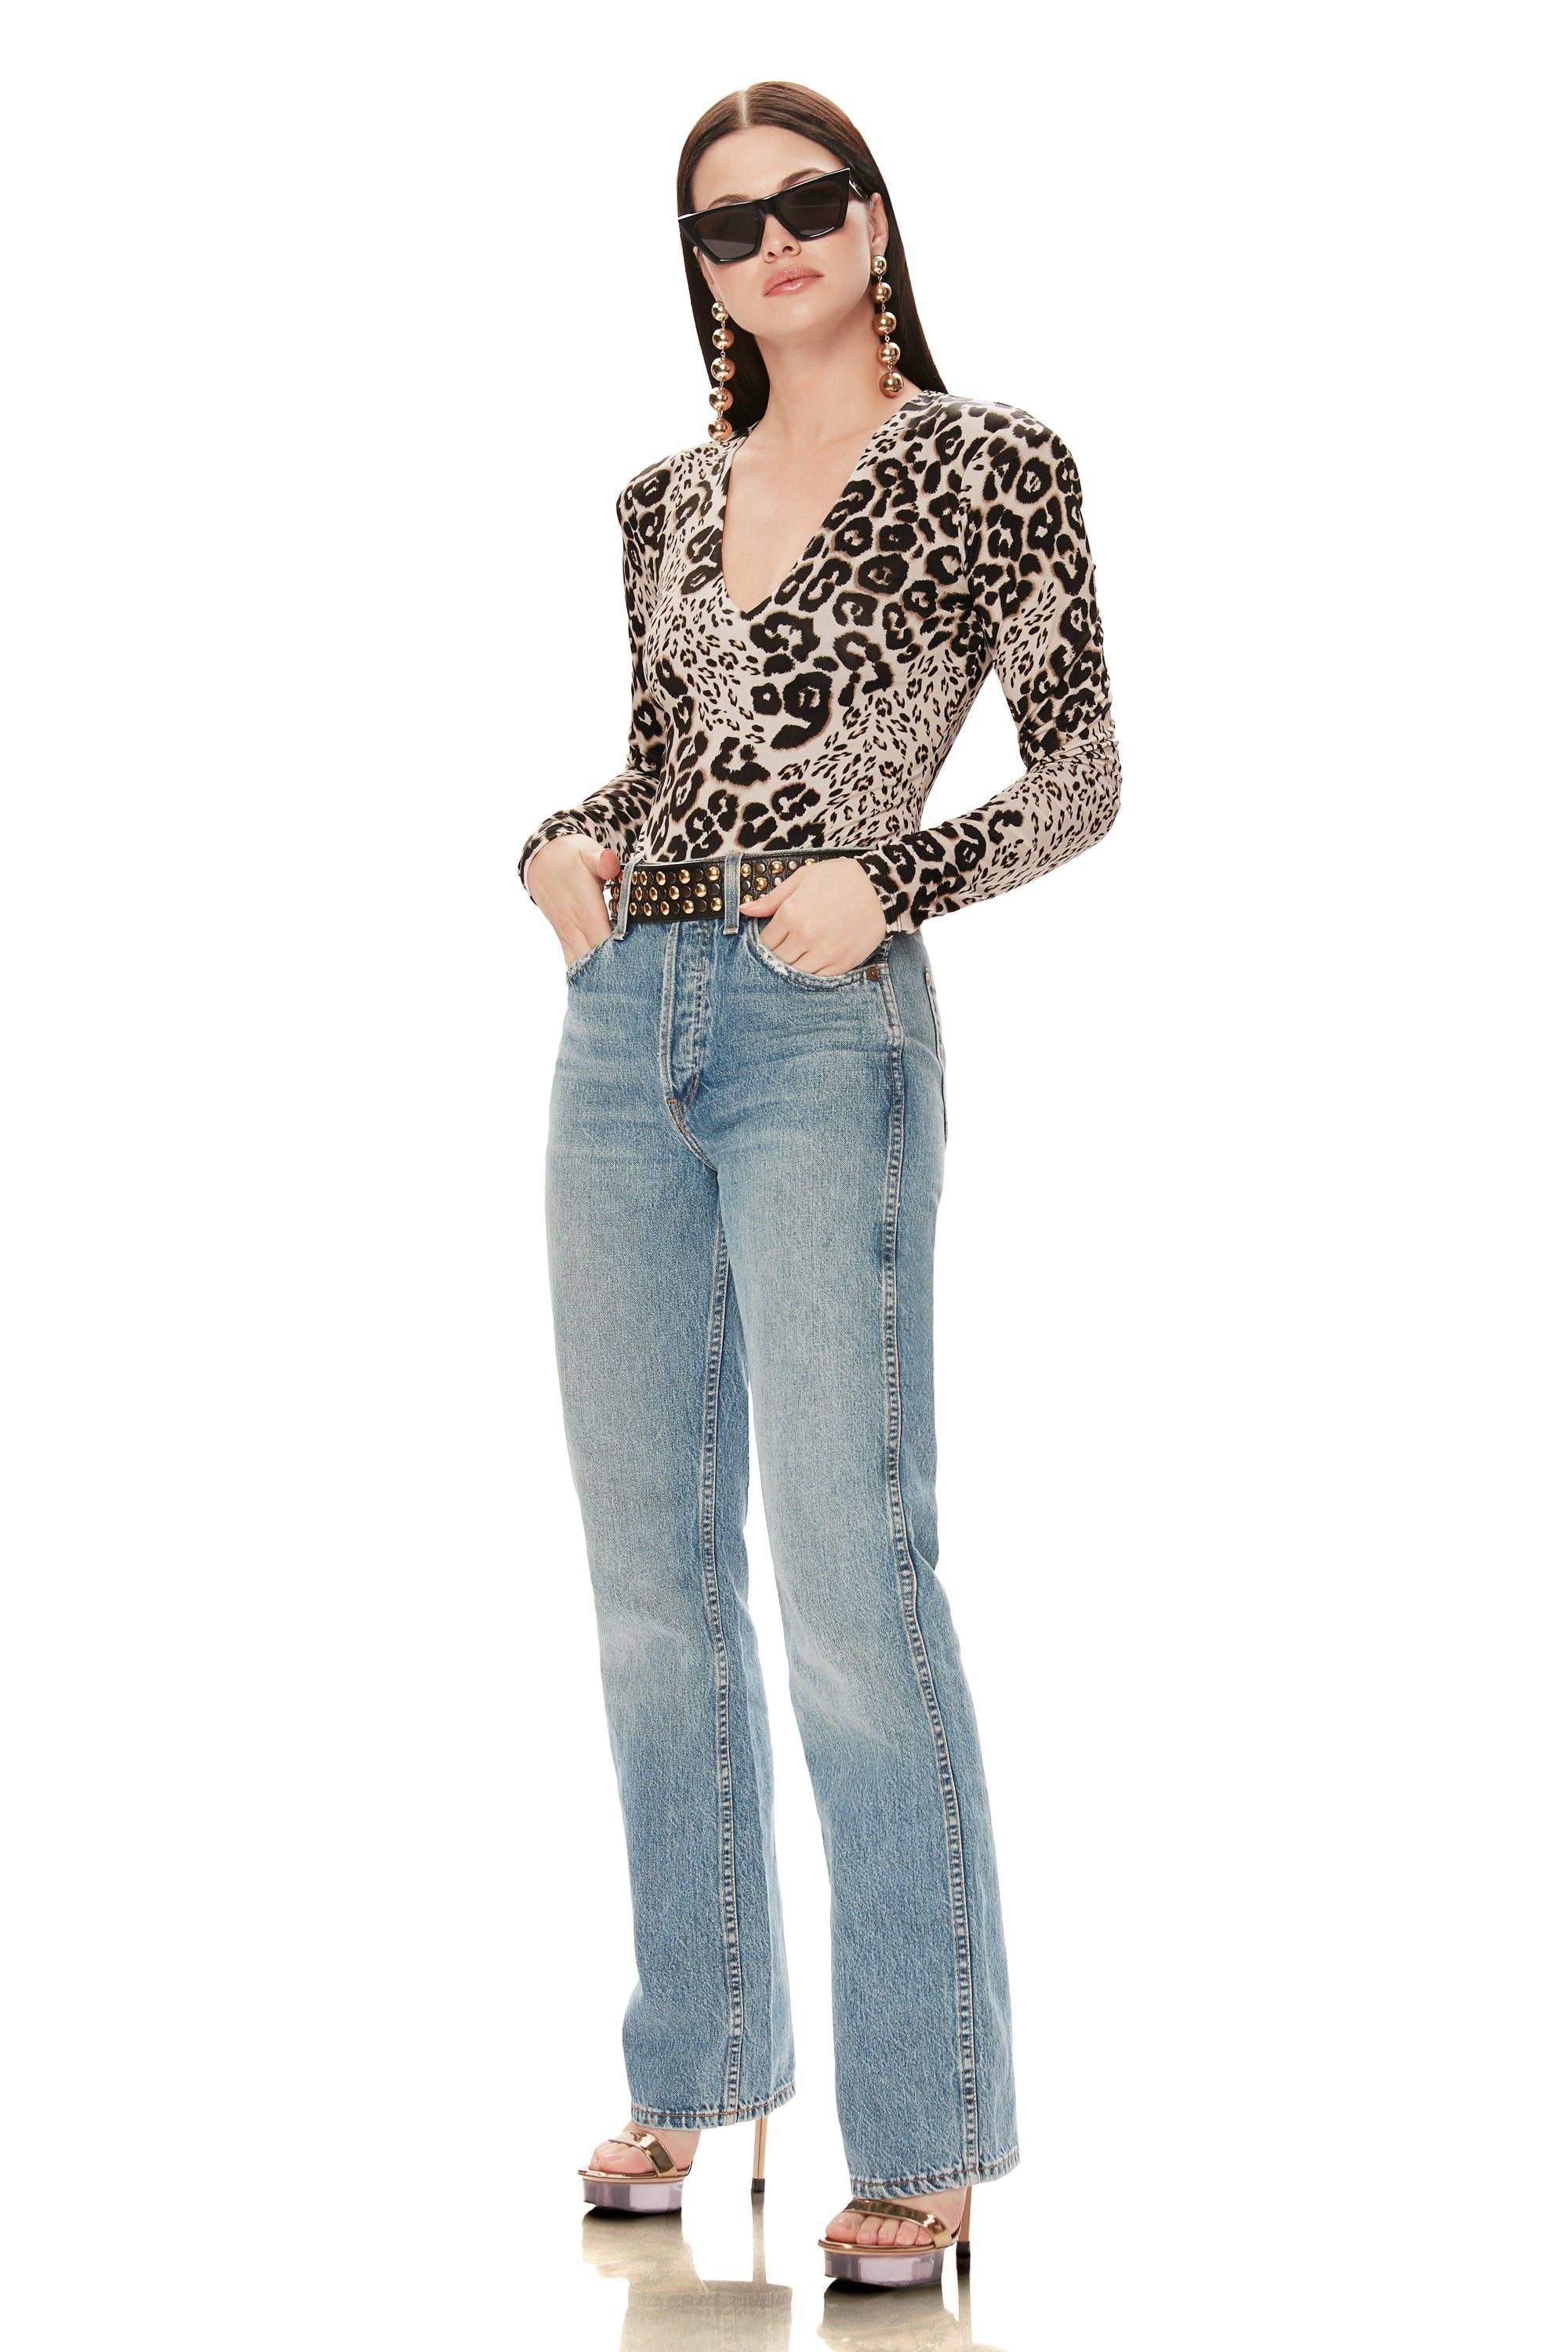 AFRM - Sybil Knit Bodysuit - Leopard Patchwork